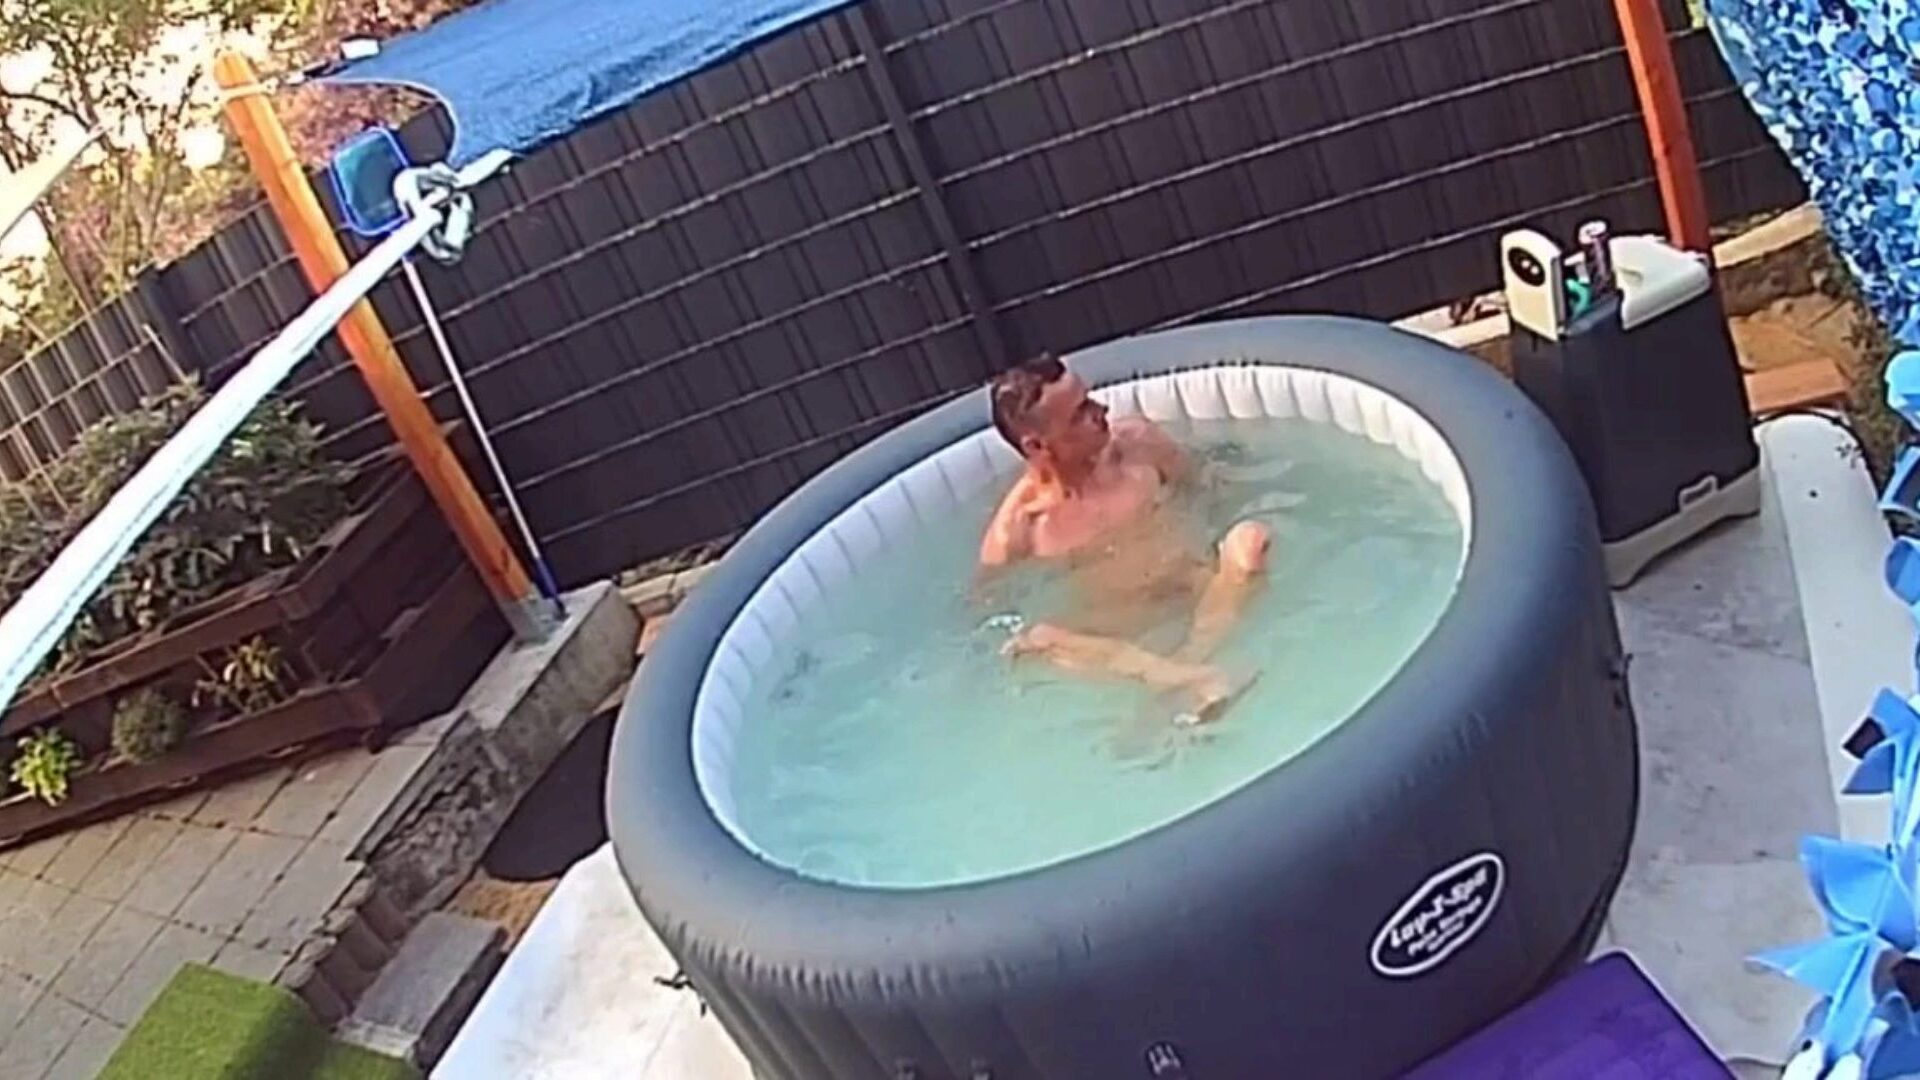 fotocamera verstecke: nachbarn im pool ausspioniert